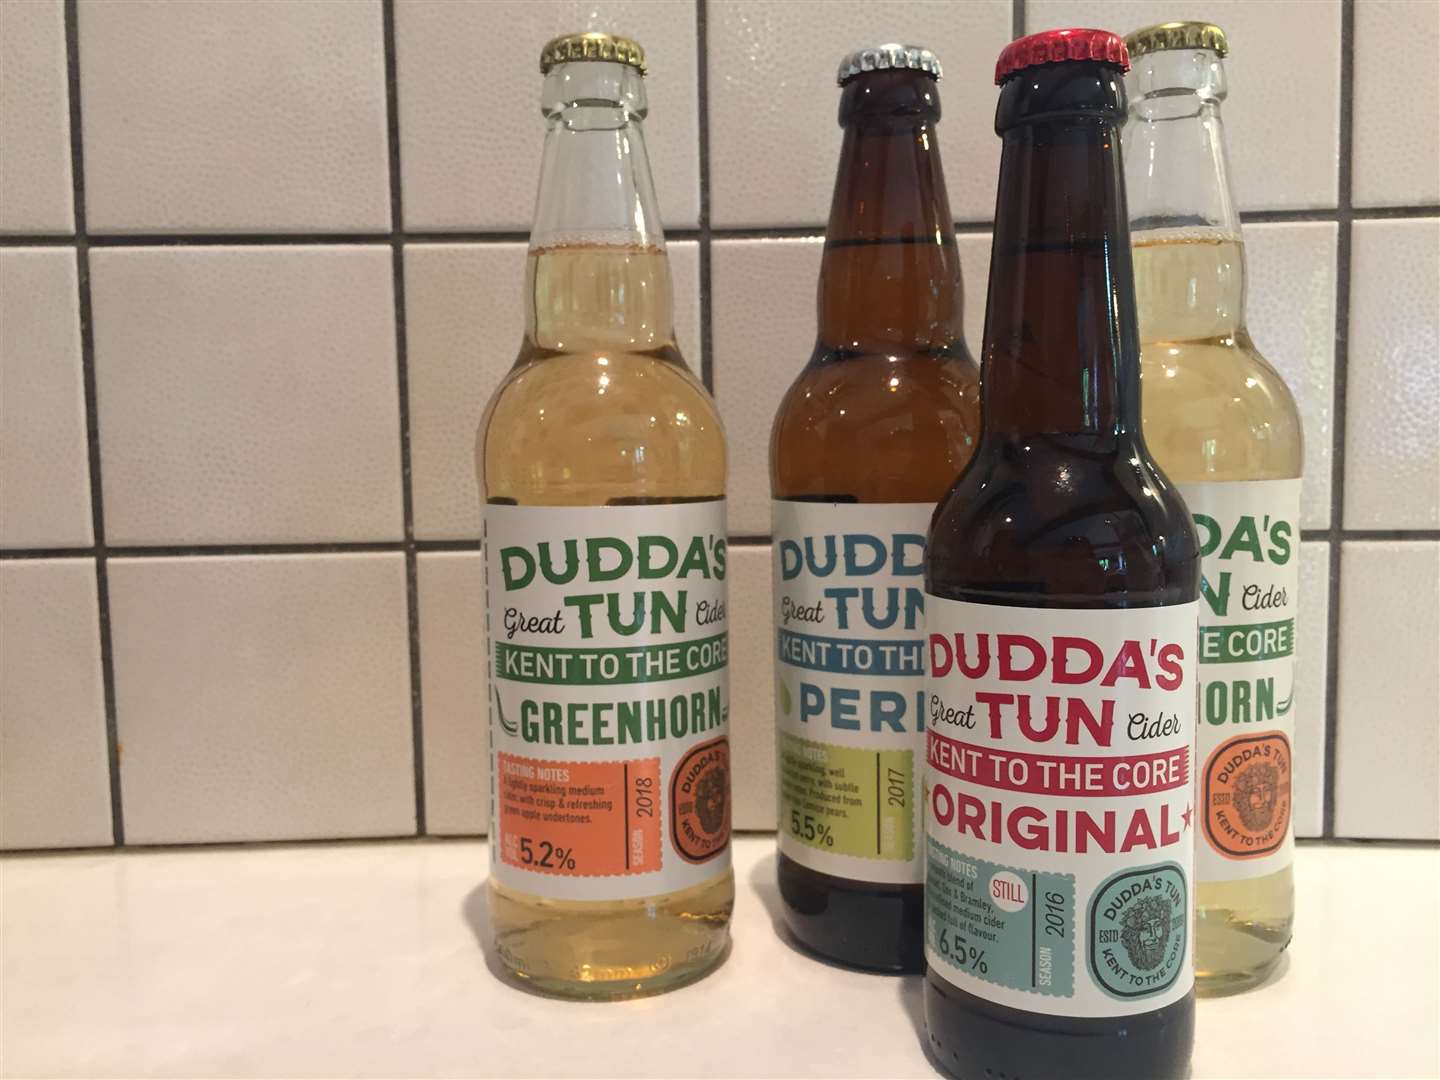 Dudda's Tun cider, made in Doddington